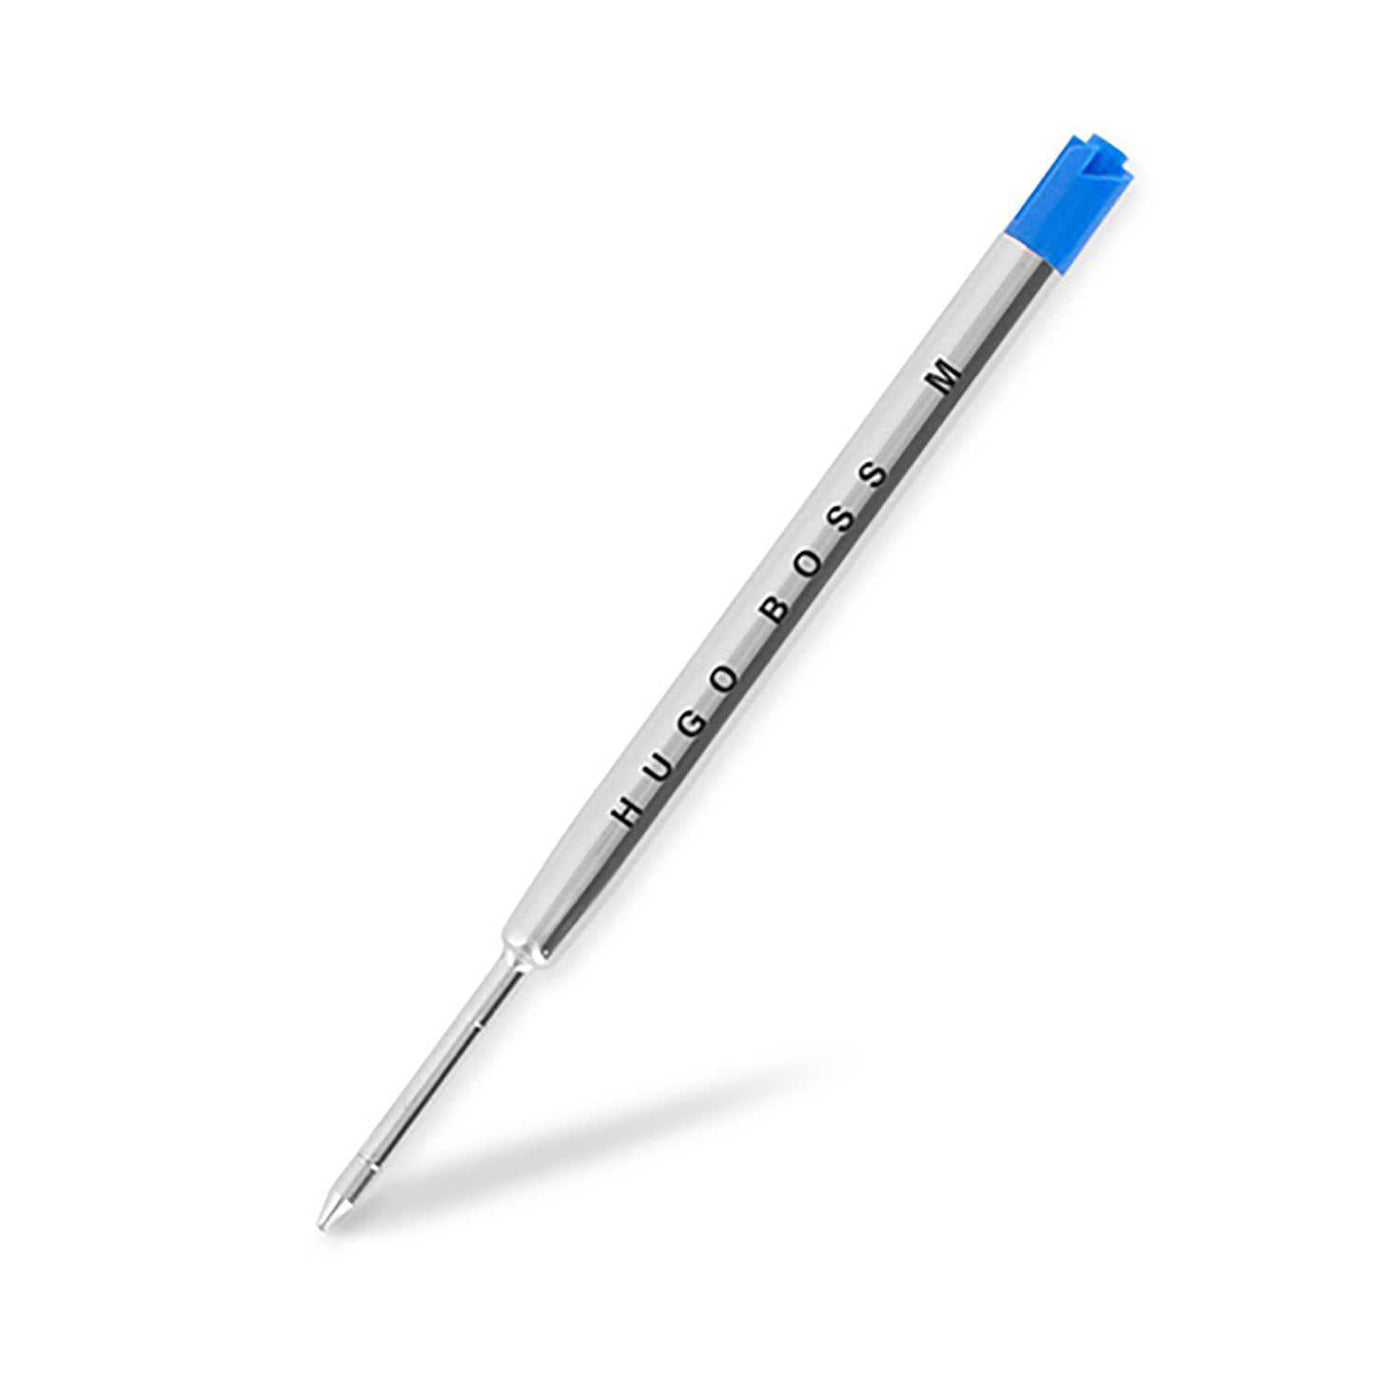 Hugo Boss Jotter Medium Ball Pen Refill Blue